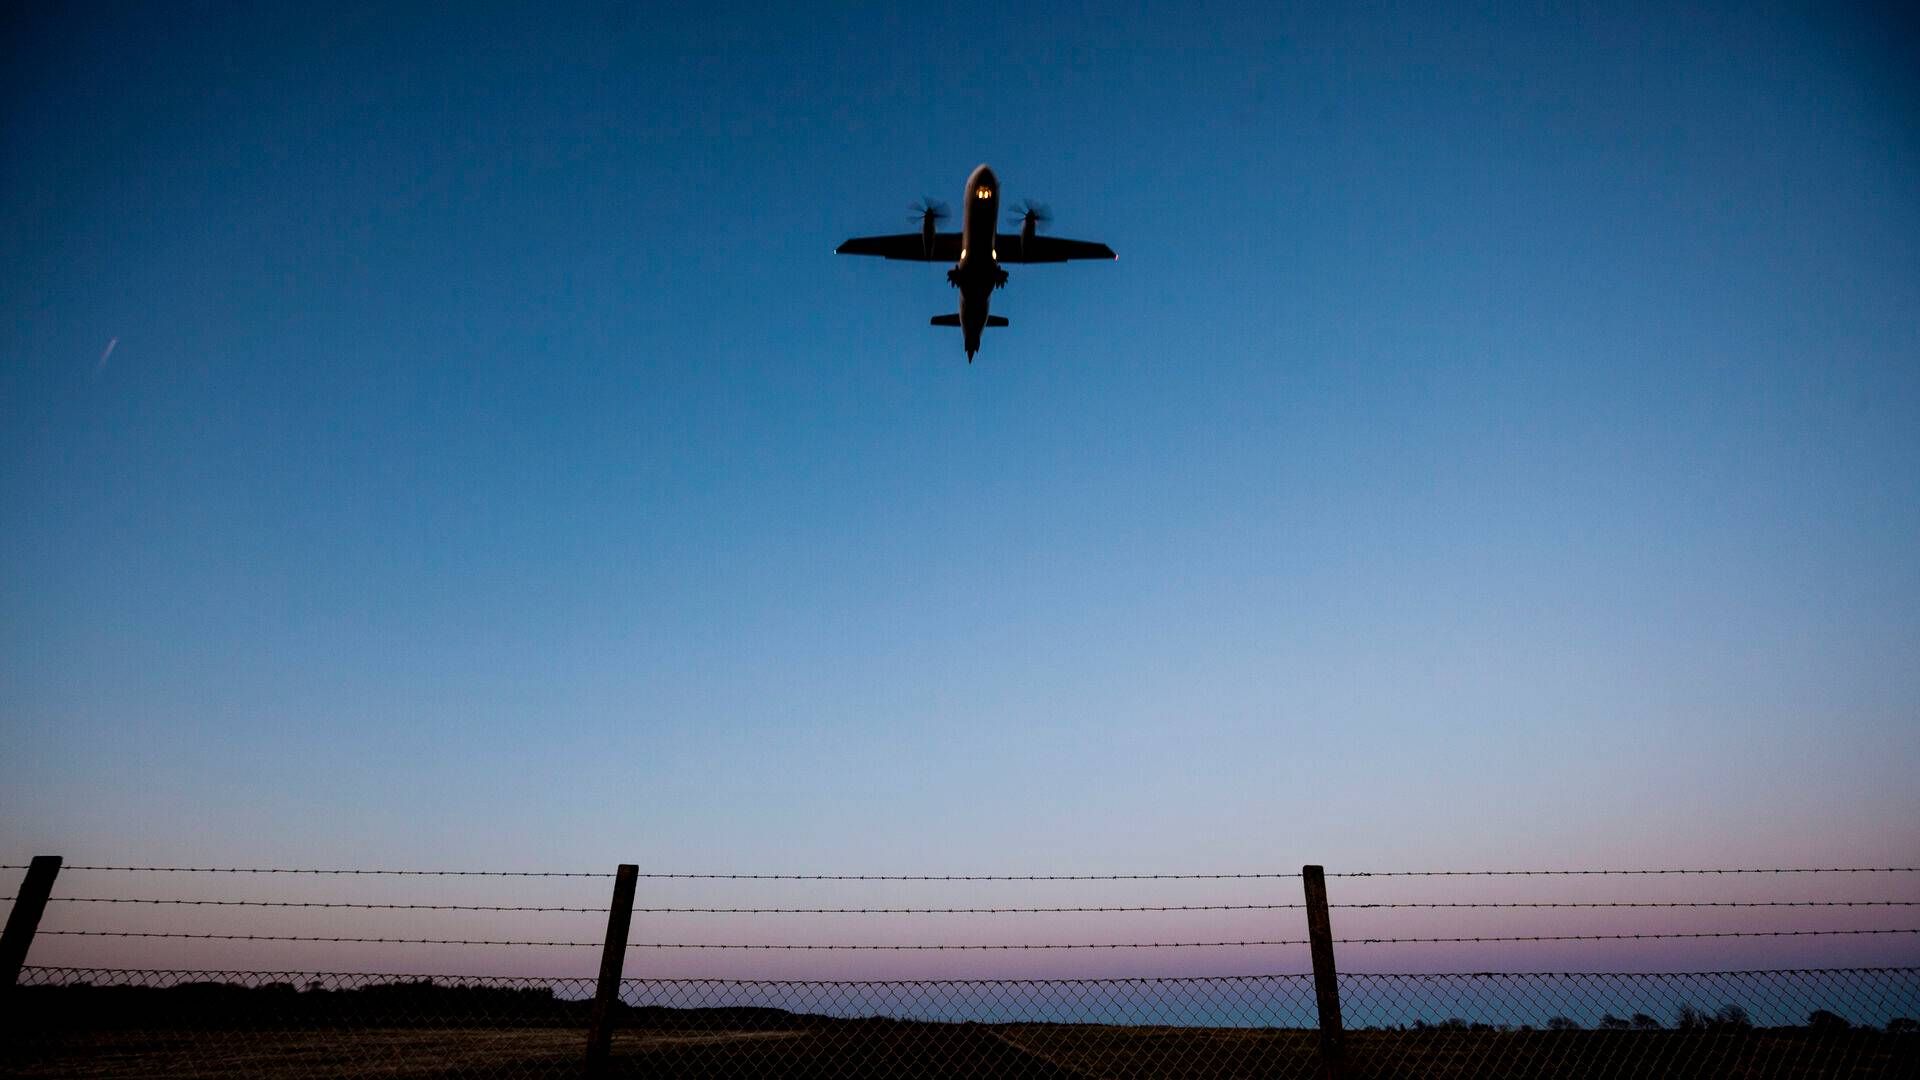 Stauning Lufthavn har gennem en årrække modtaget over 24 mio. kr. i økonomisk støtte for at overleve. | Foto: Pedersen Mikkel Berg/Jyllands-Posten/Ritzau Scanpix